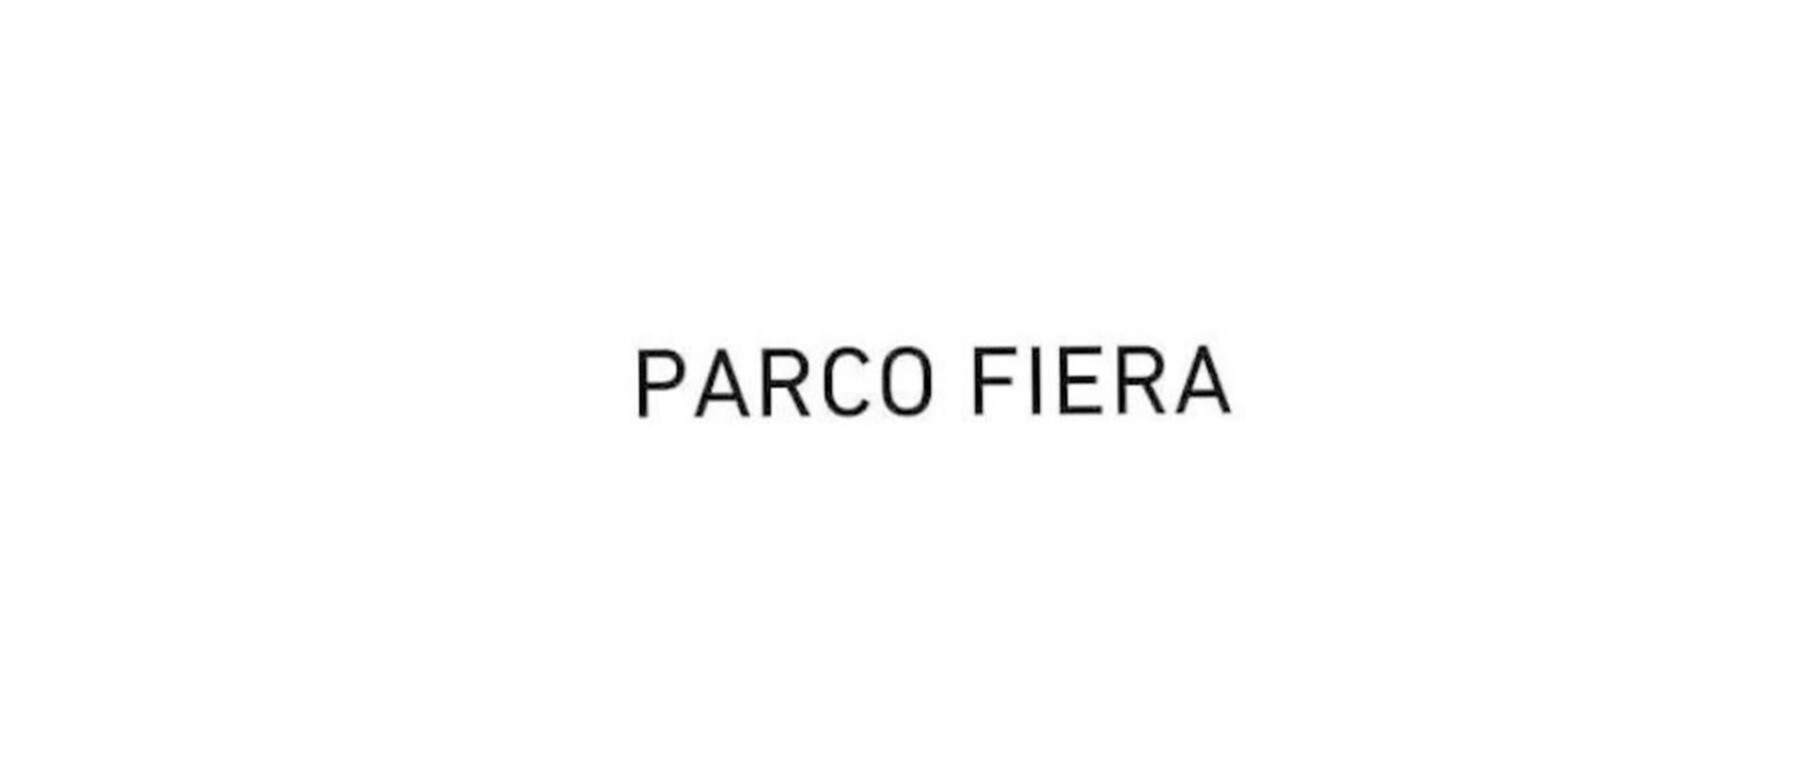 PARCO FIERA's images1